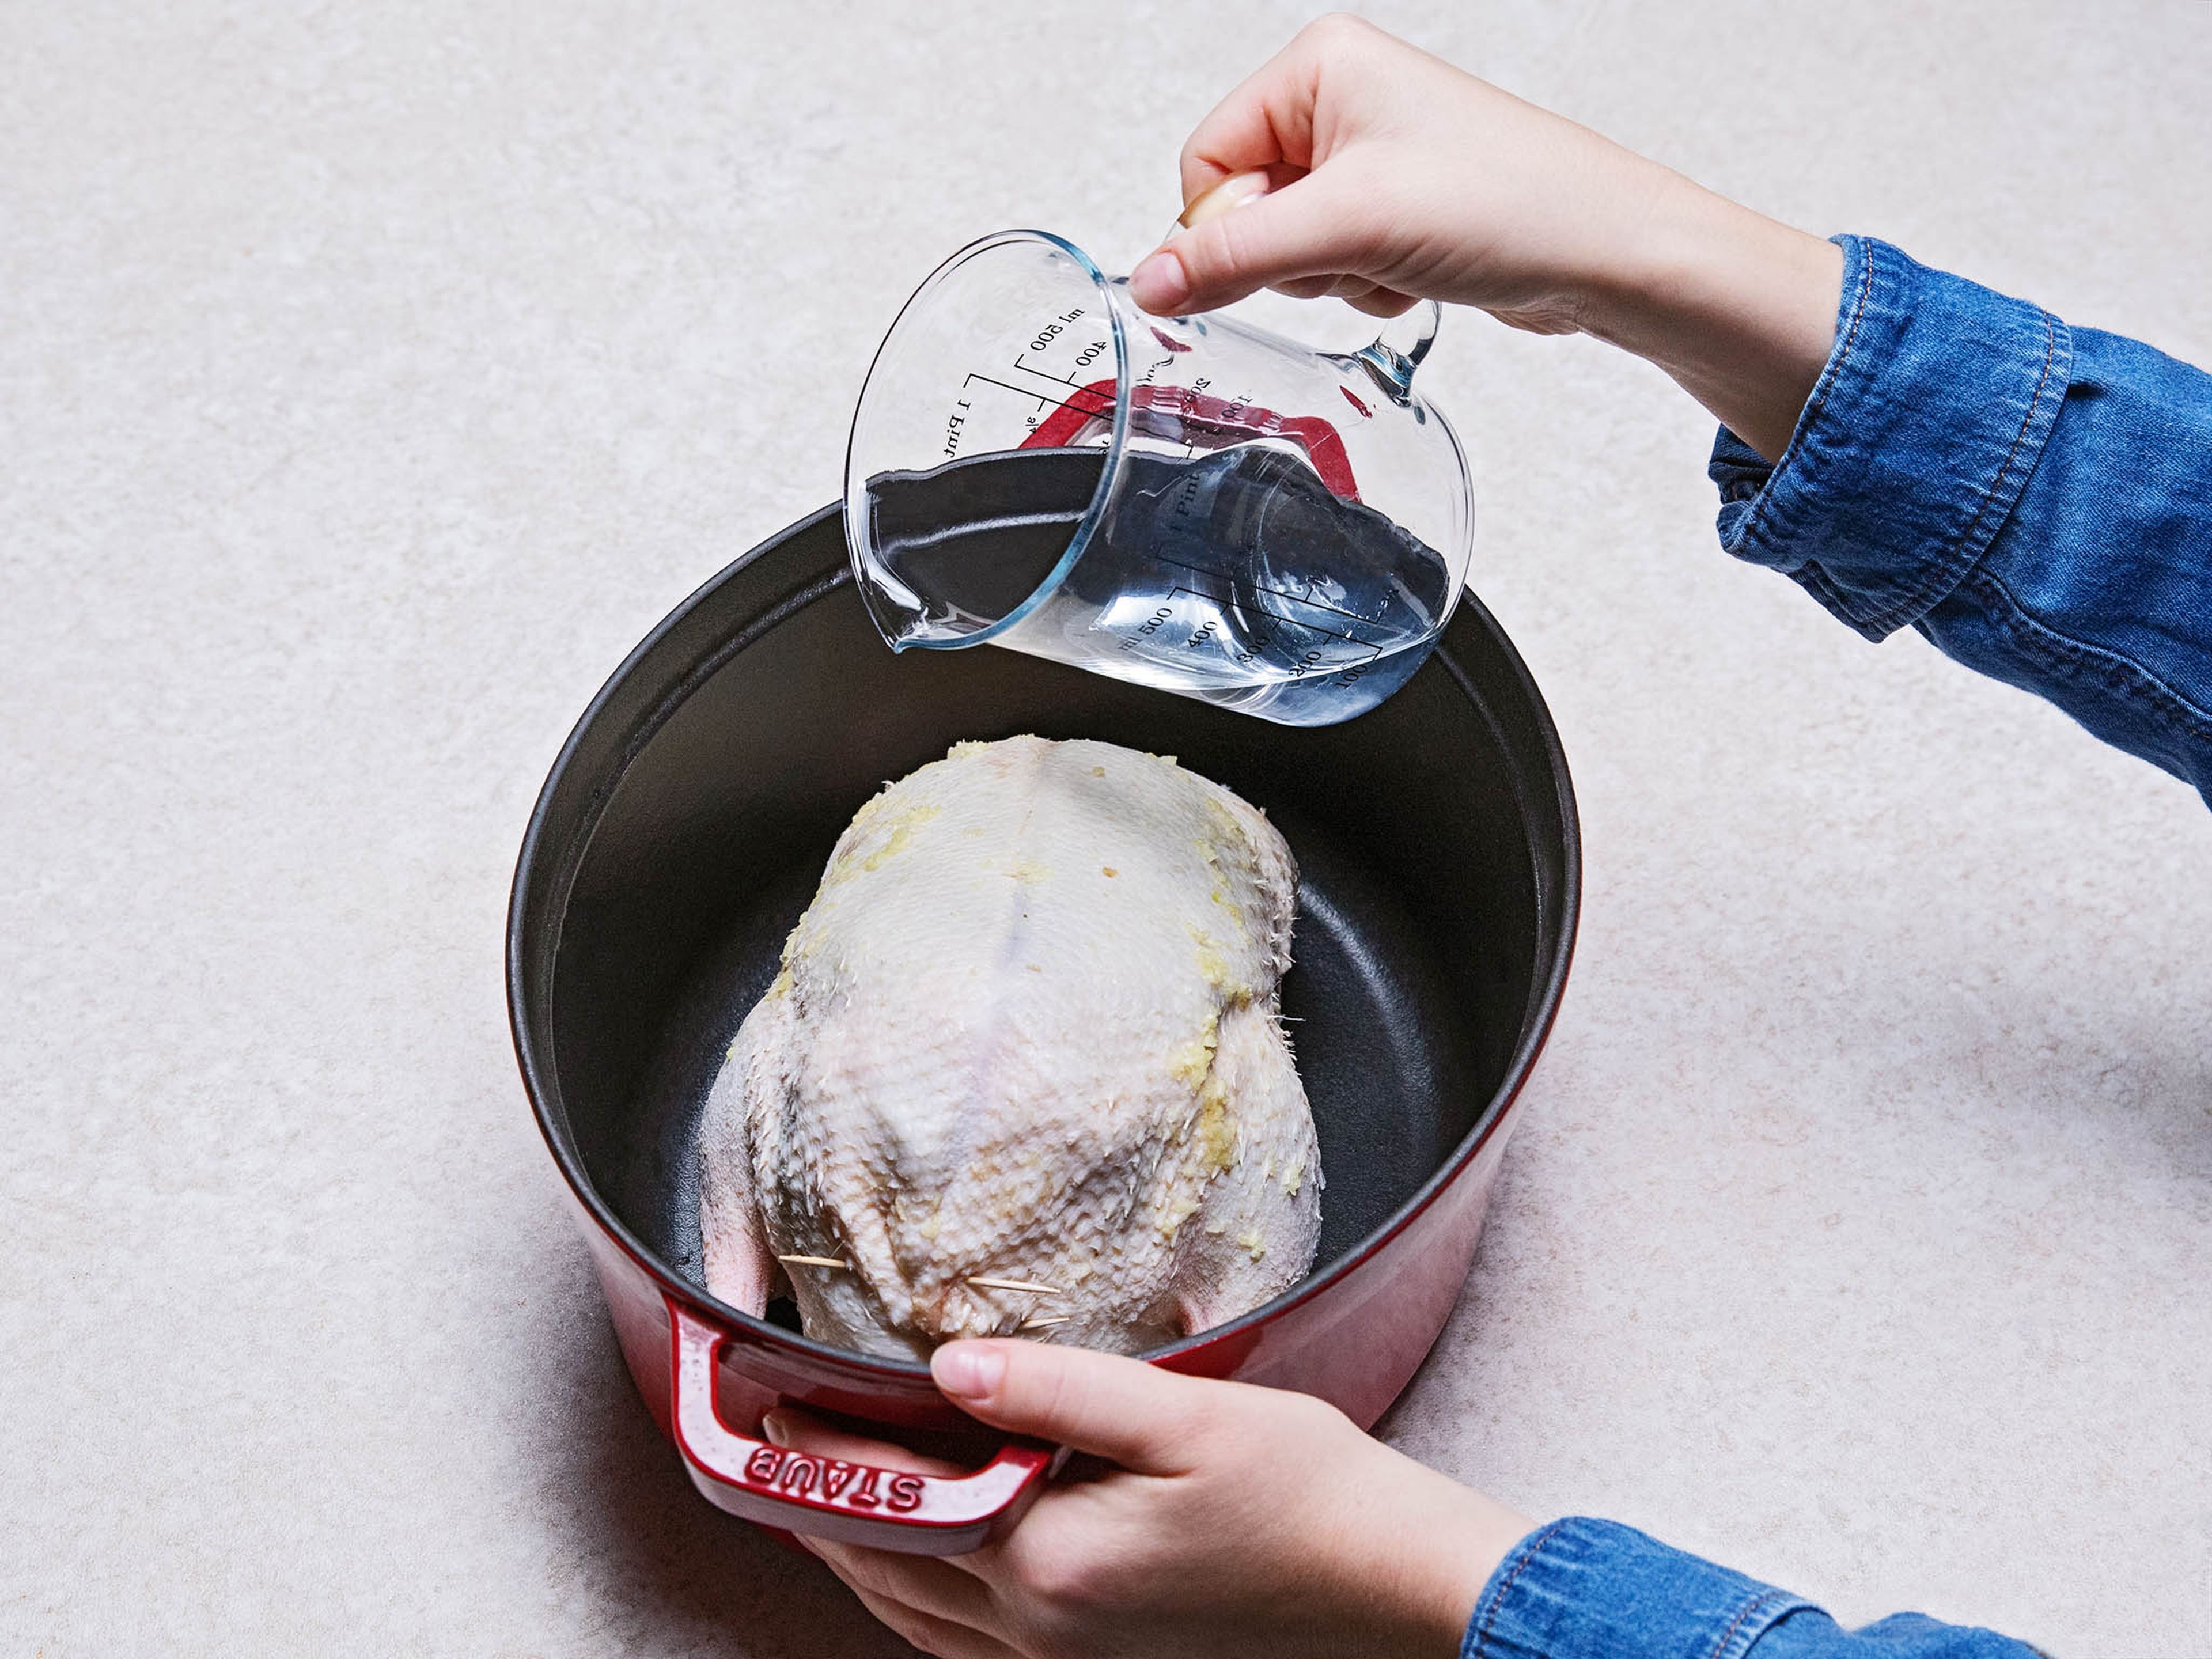 Ente in einen Bräter legen. 100 ml Wasser hinzufügen und abgedeckt im Ofen für 2,5 Std. garen. Deckel entfernen und Ofen auf 200°C erhitzen. Für 40 Min. weitergaren.